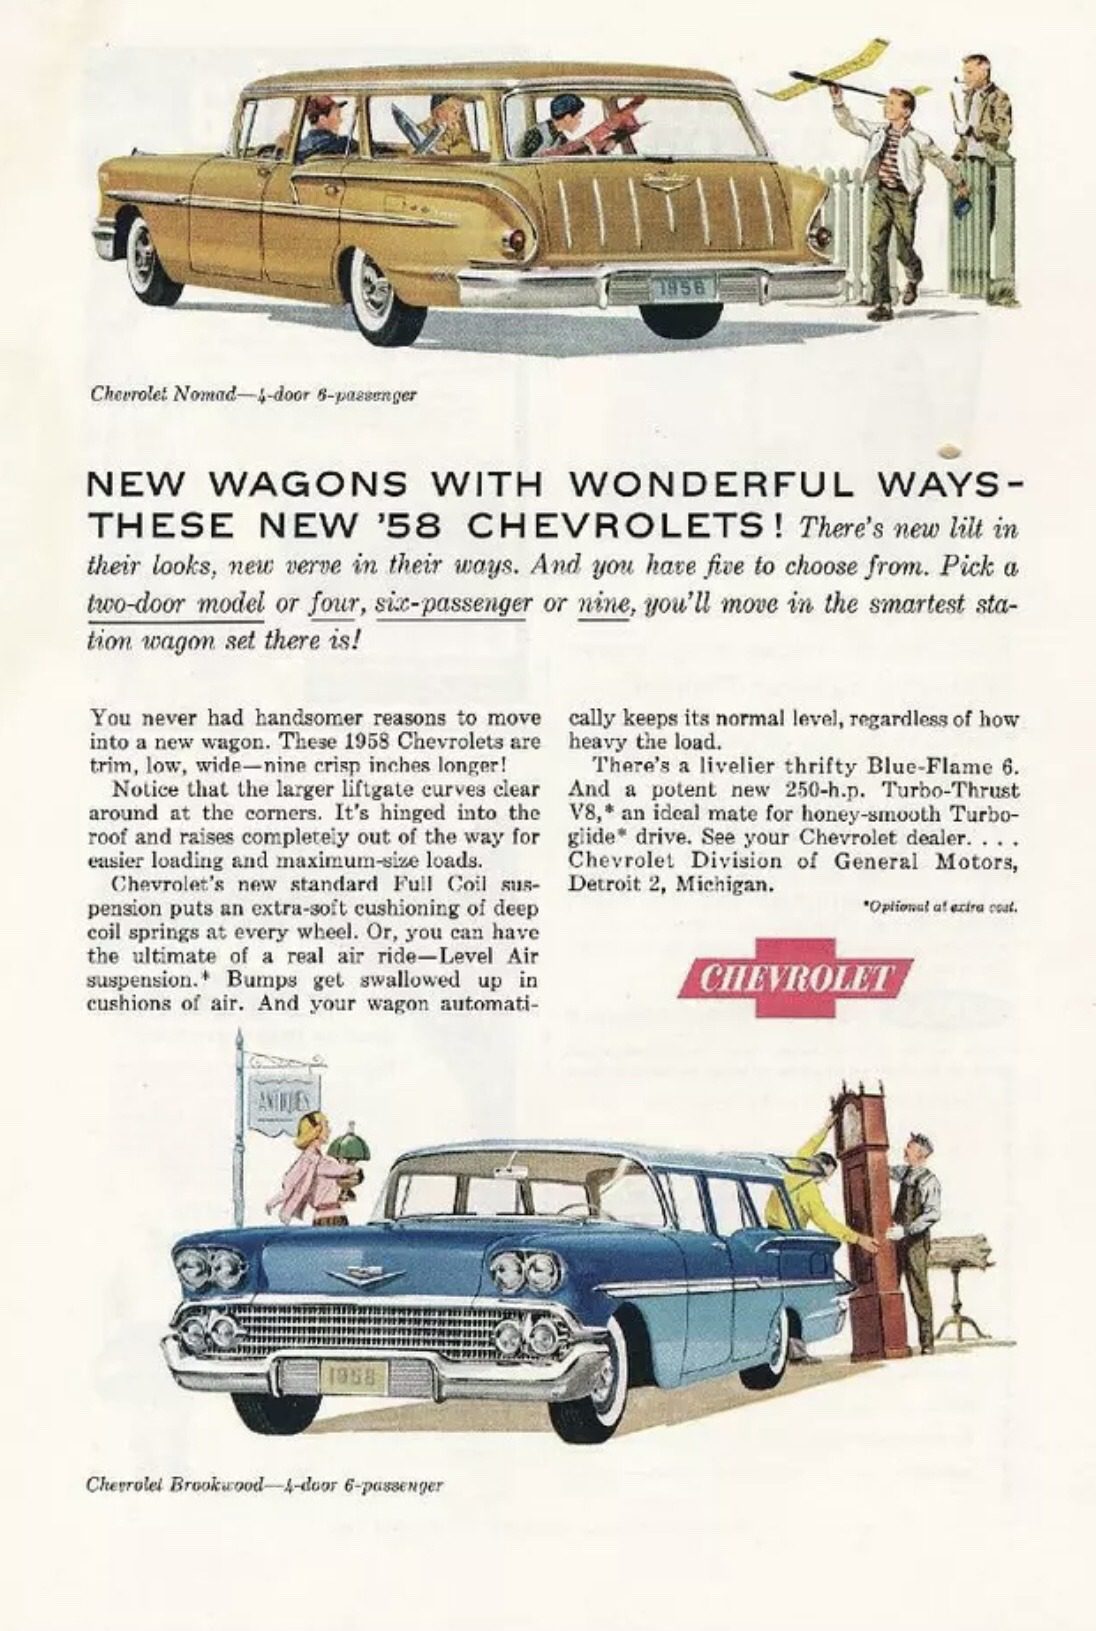 1958 Chevy Nomad wagon magazine advertising